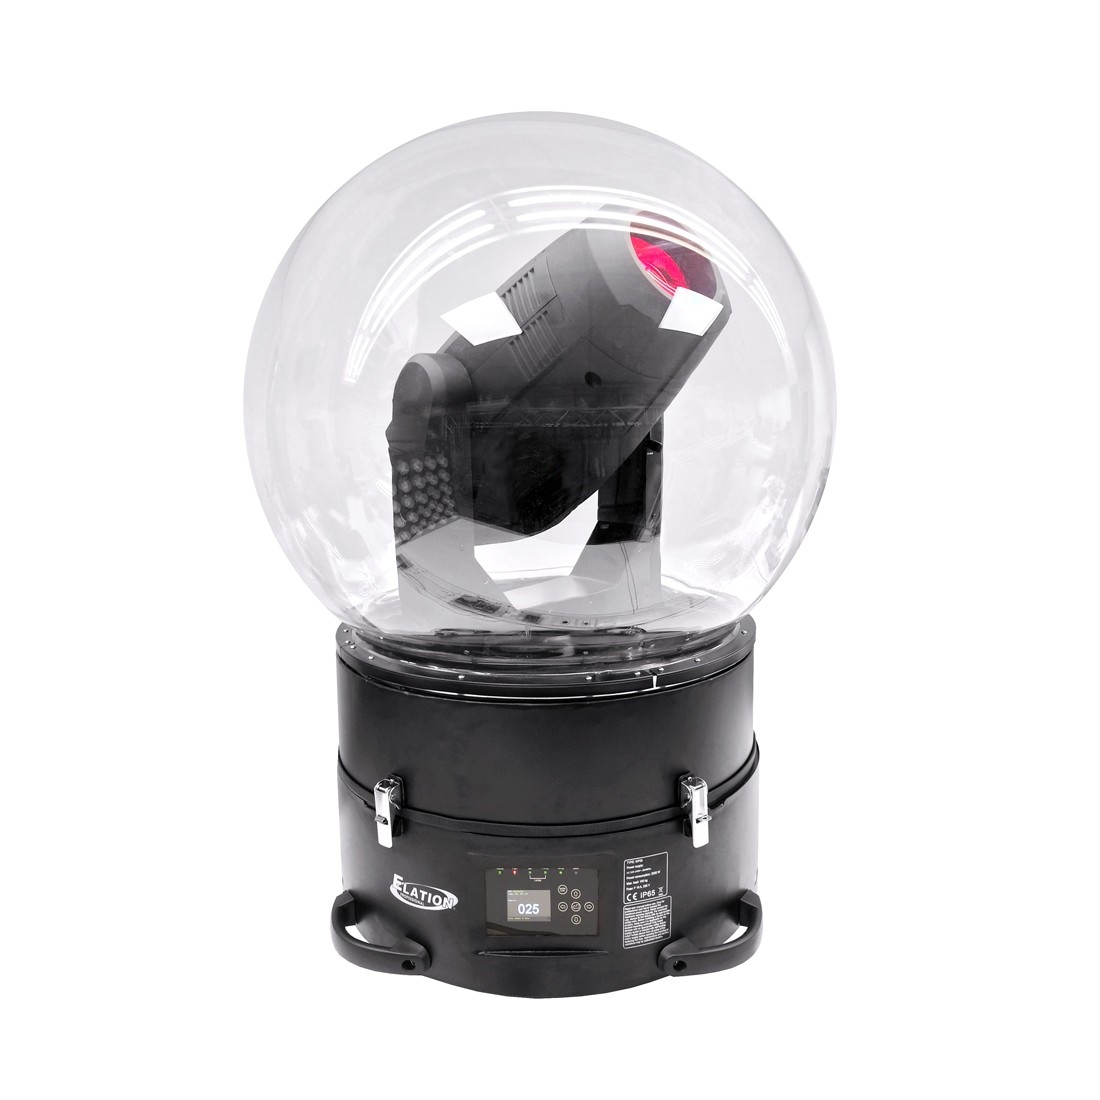 Custodia trasparente gonfiabile anti-pioggia per teste mobili WP-06 Moving Head Dome rotonda